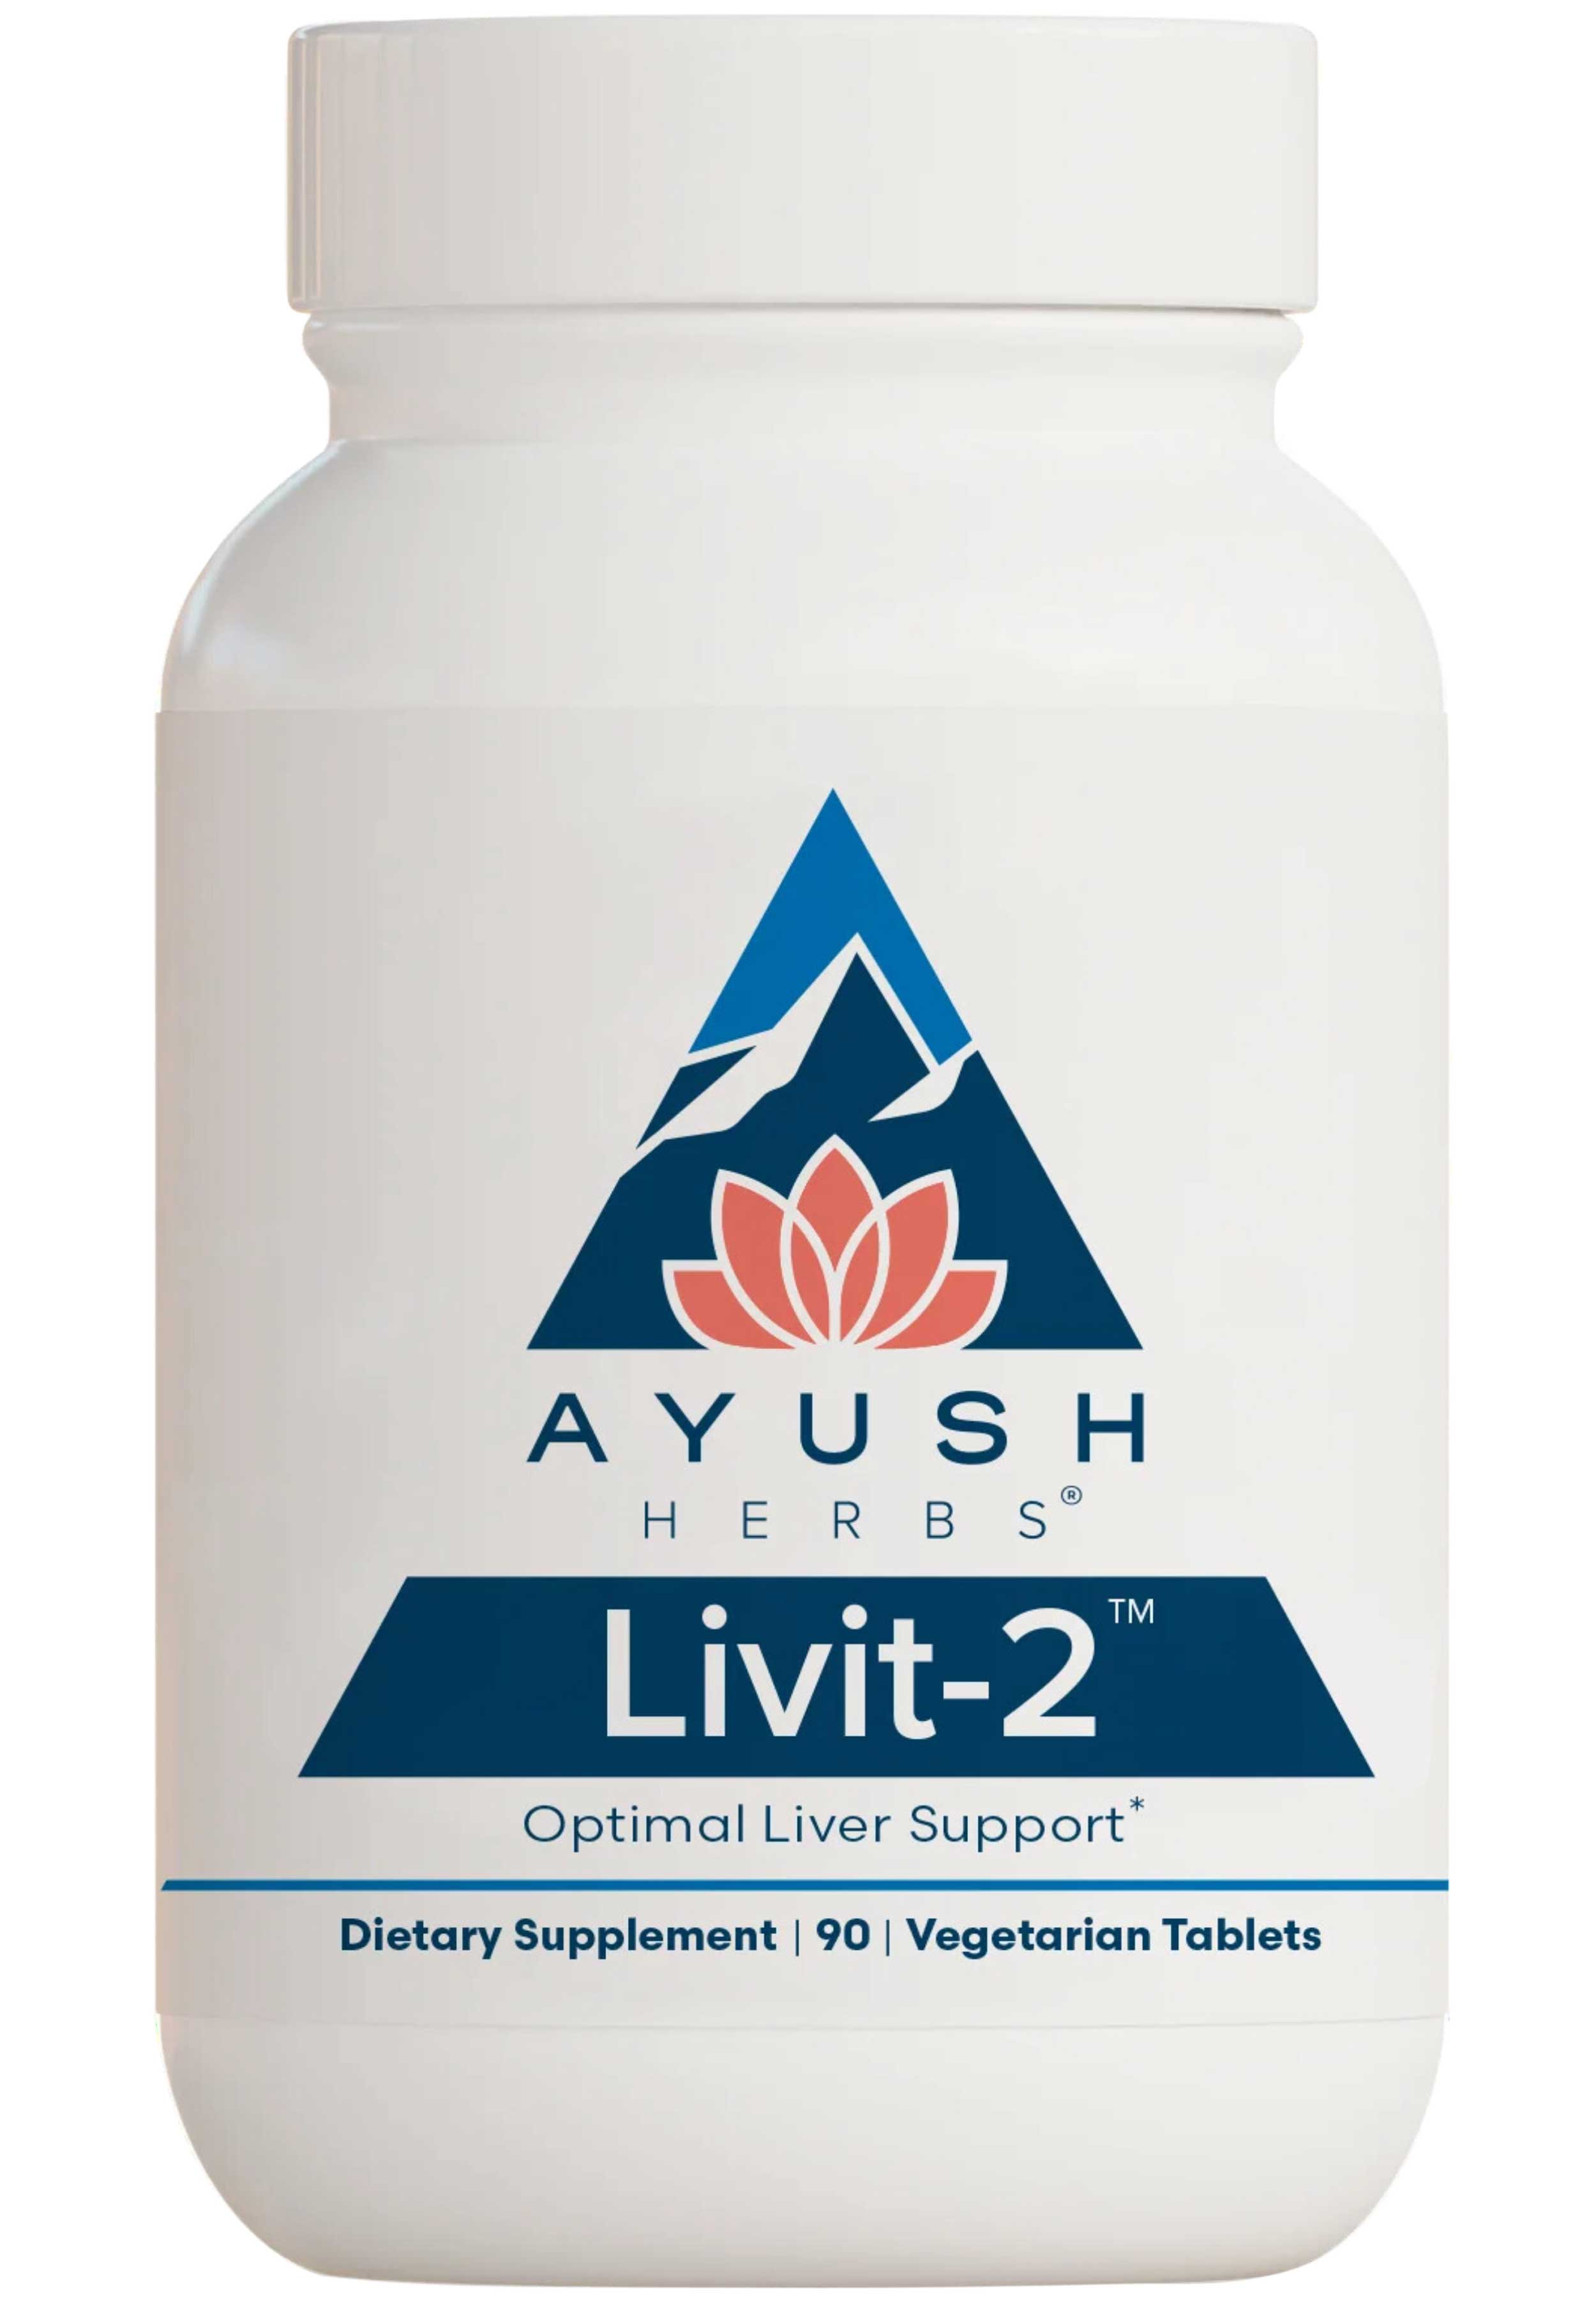 Ayush Herbs Livit-2